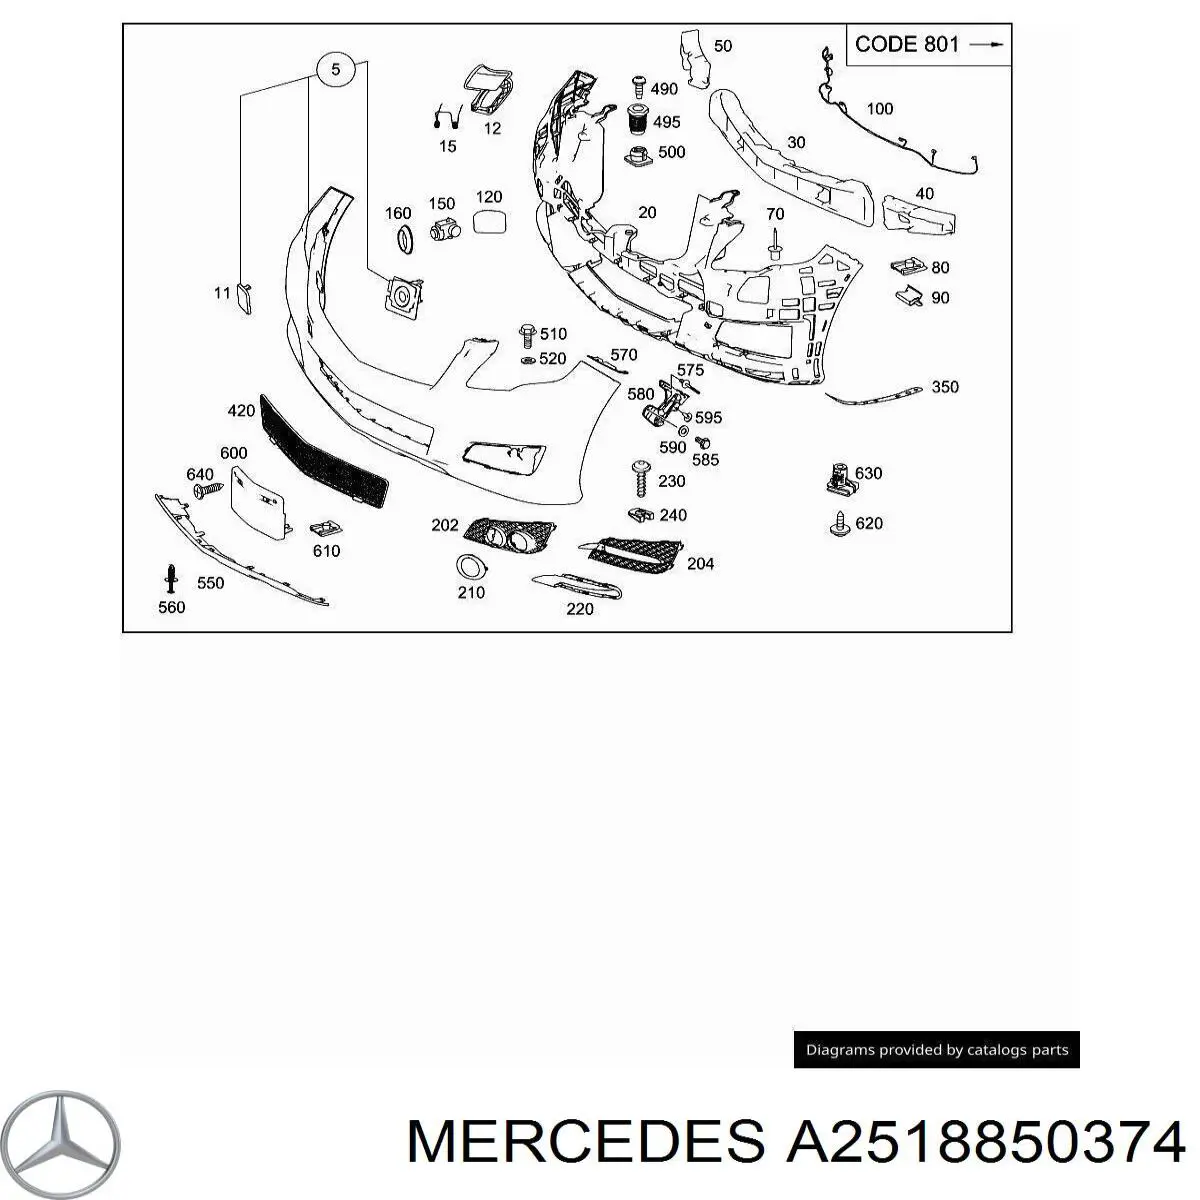 A2518850374 Mercedes ободок (окантовка фары противотуманной левой)